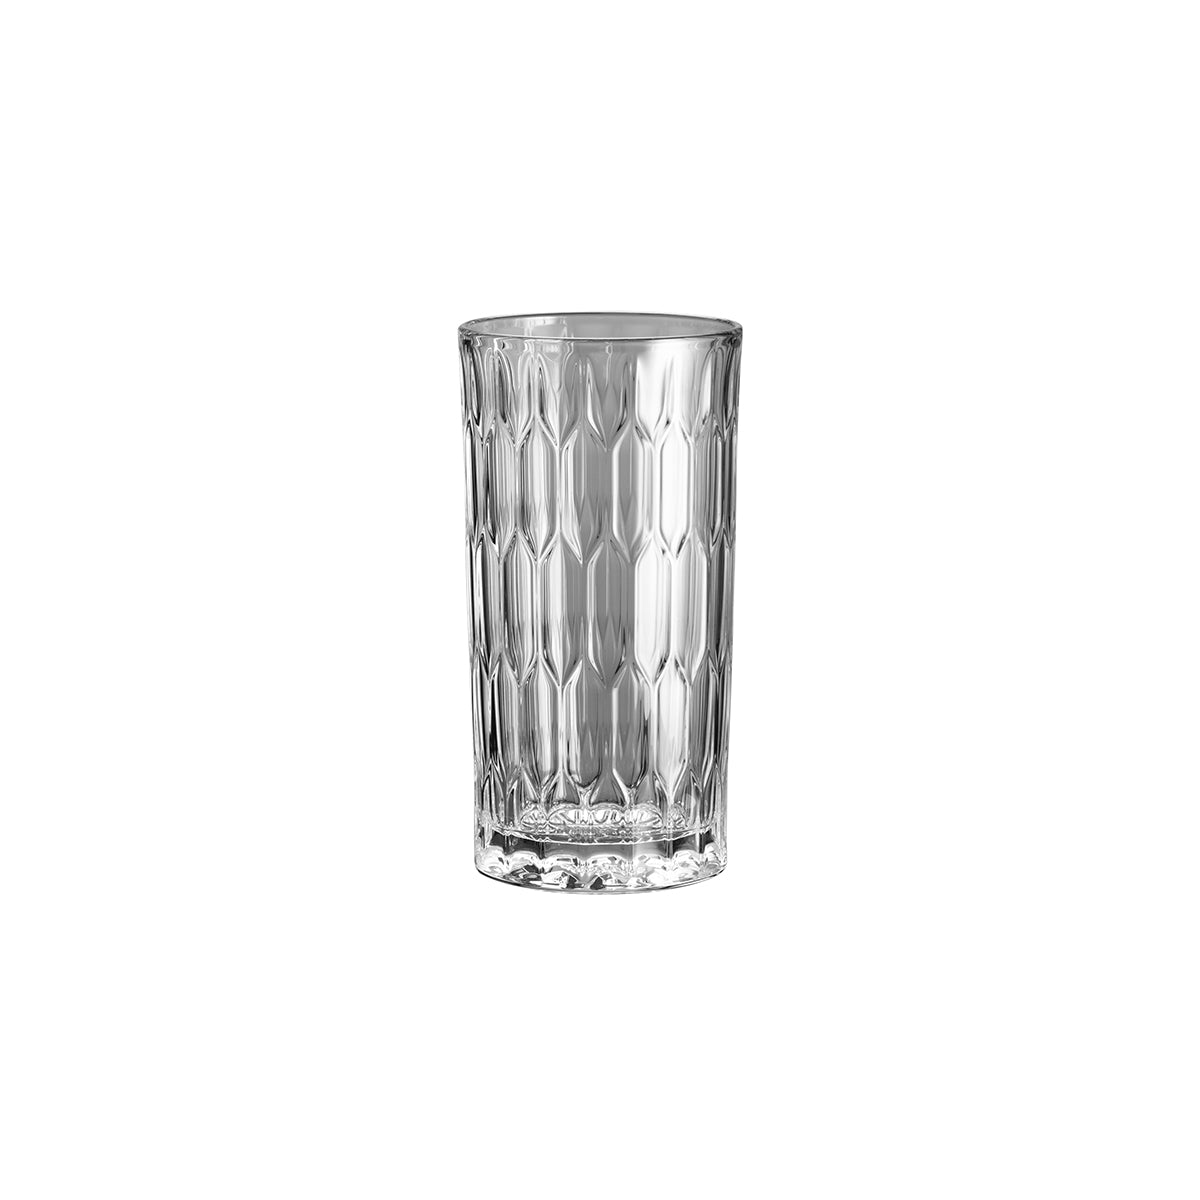 55.0118.0004 WMF Latte / Macchiato Glass 410ml Tomkin Australia Hospitality Supplies